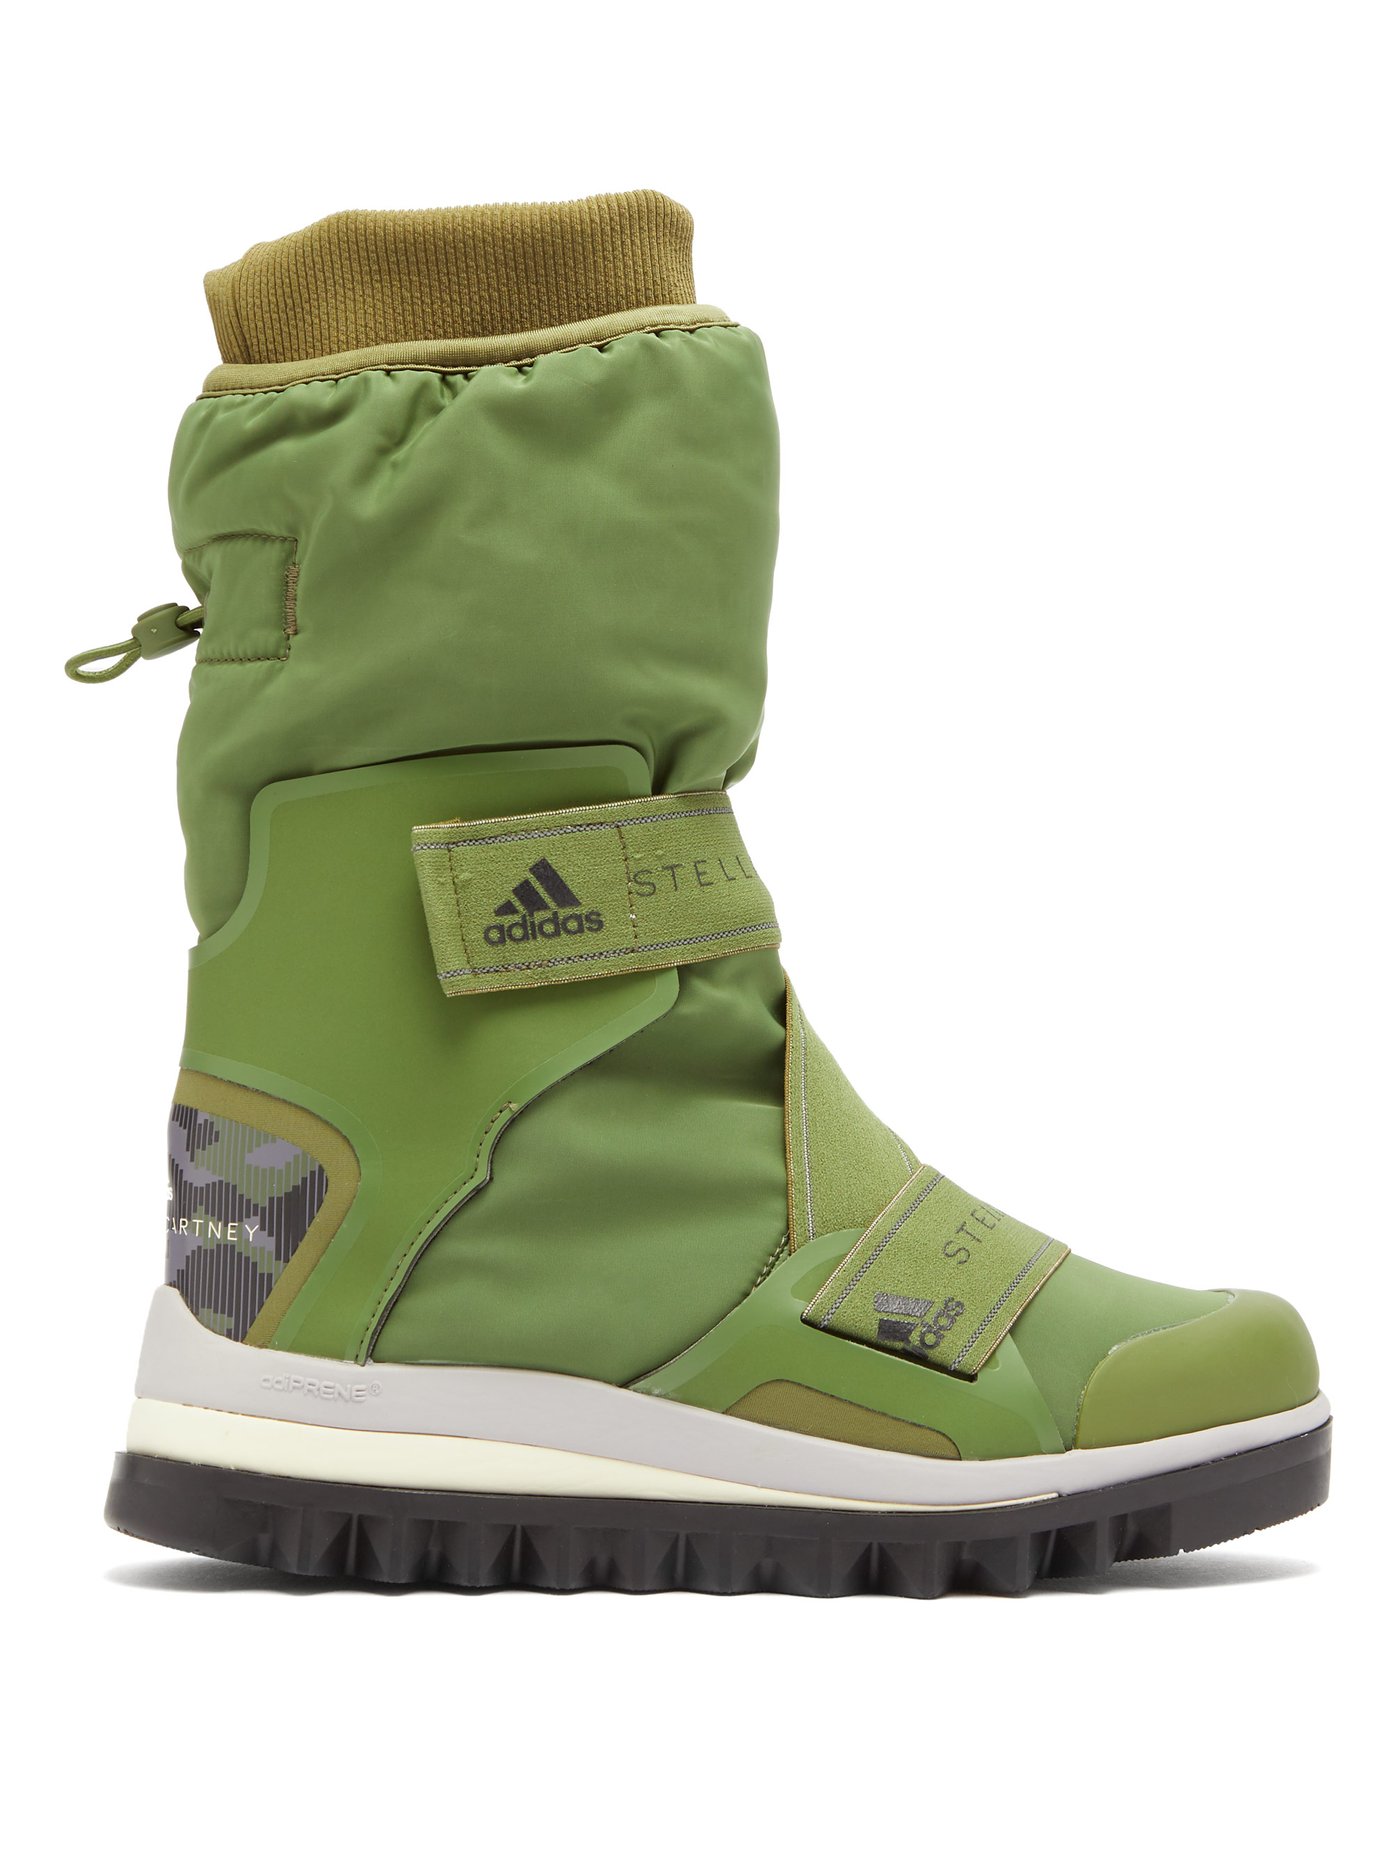 adidas uk boots